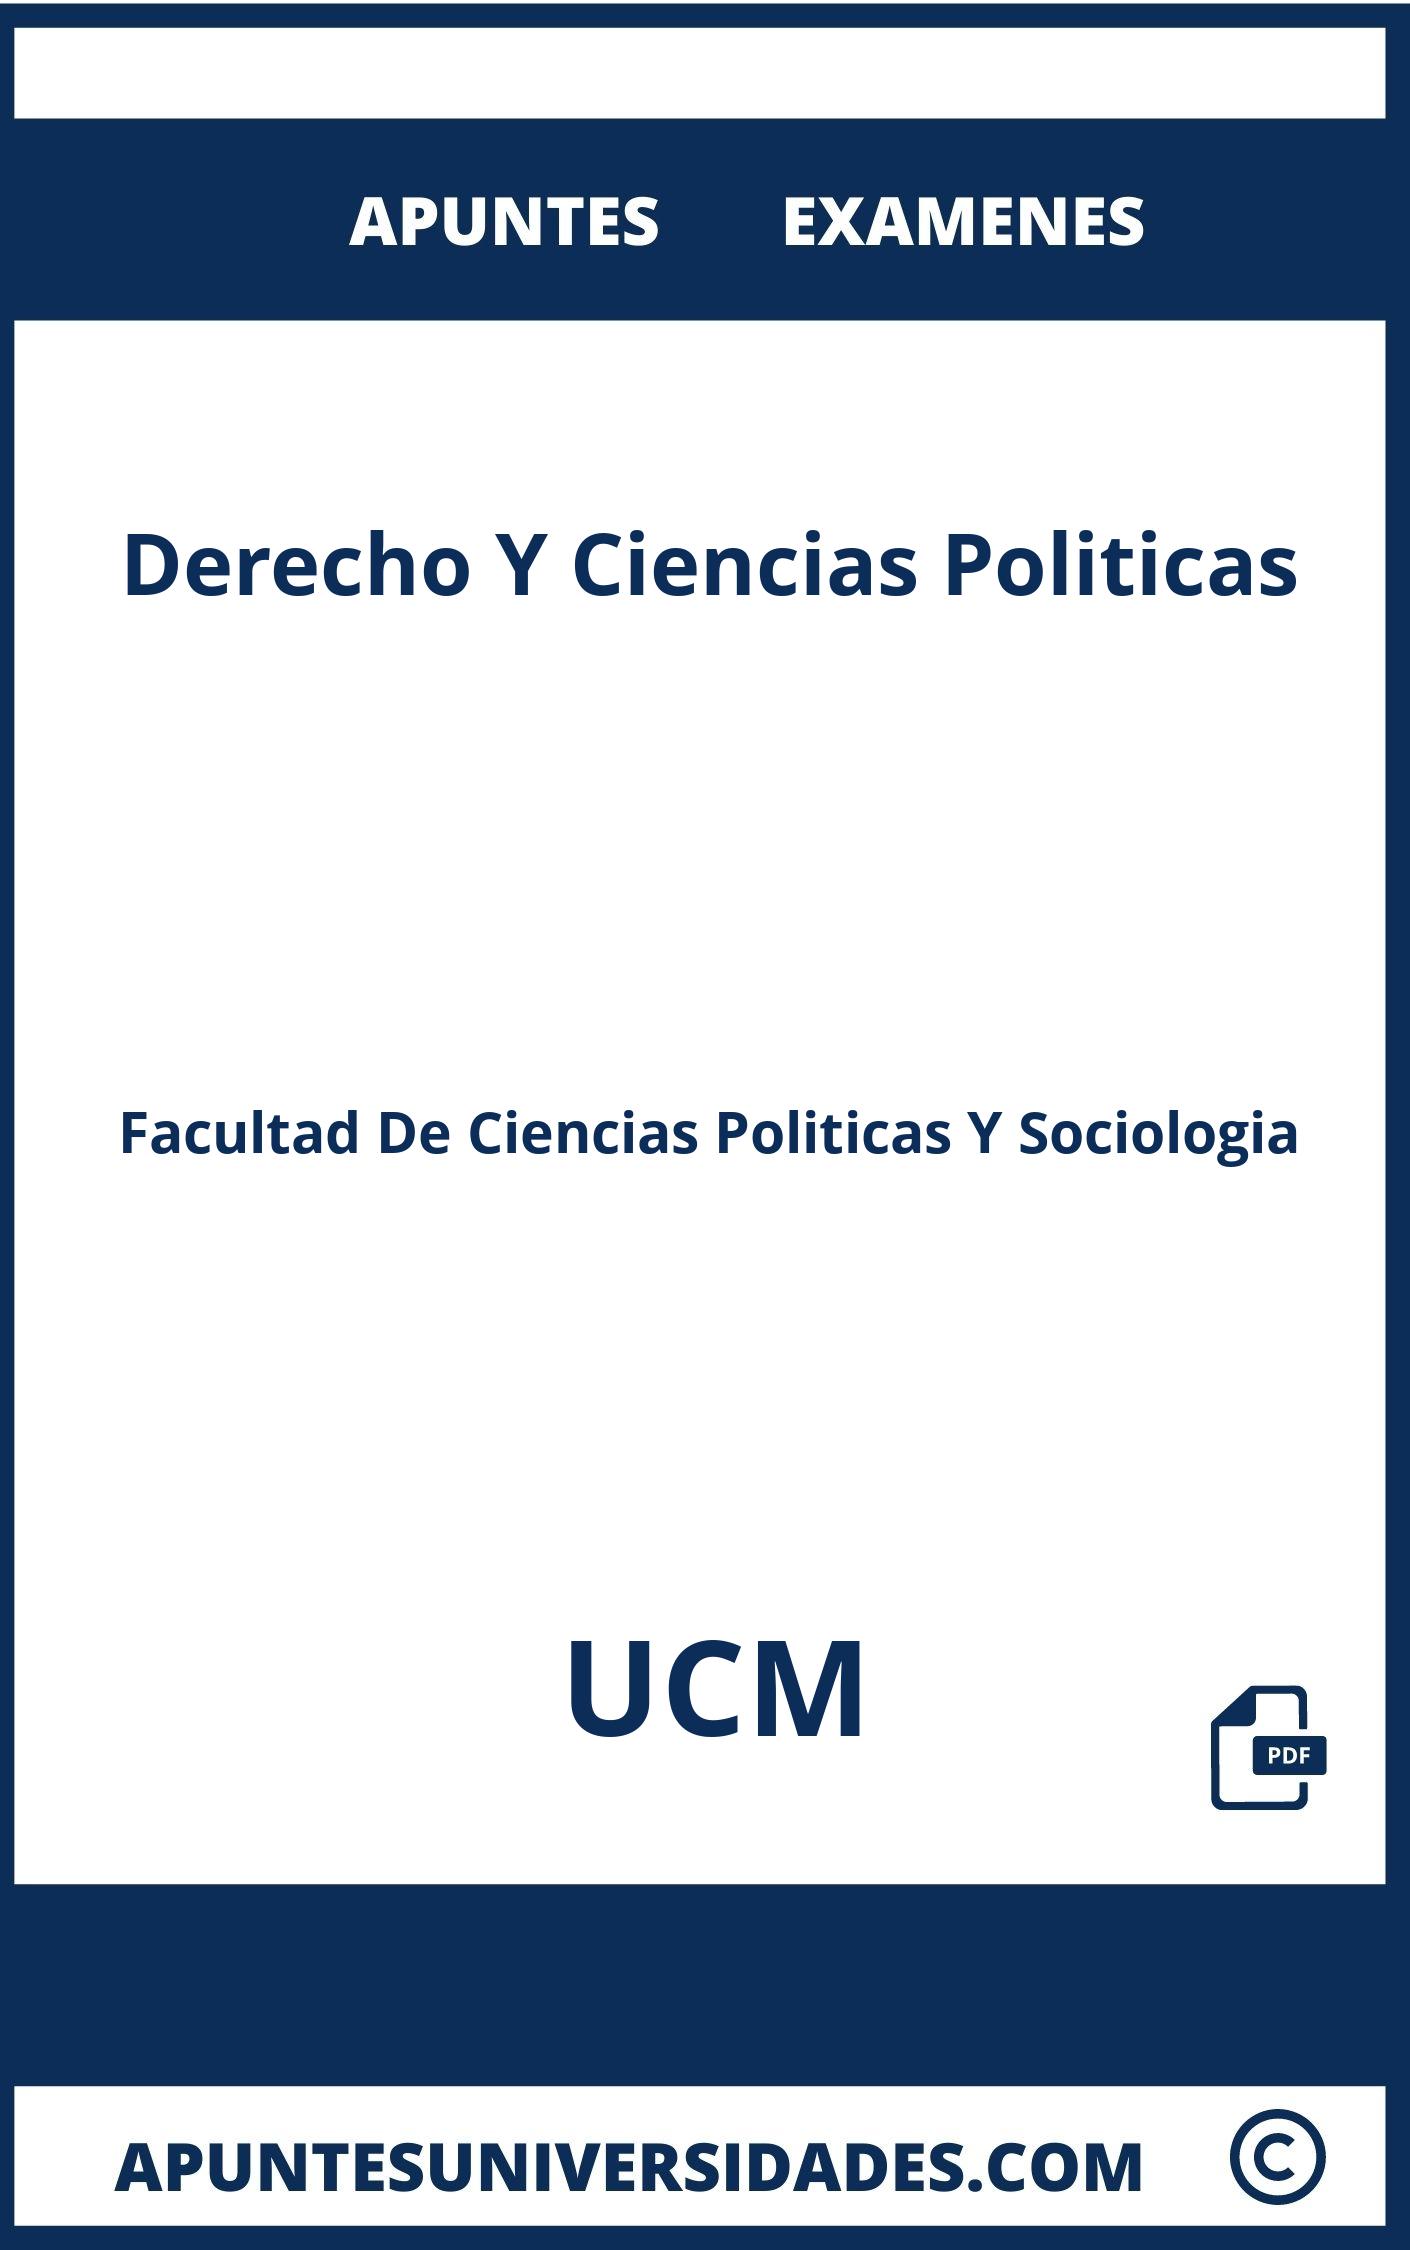 Examenes Derecho Y Ciencias Politicas UCM y Apuntes